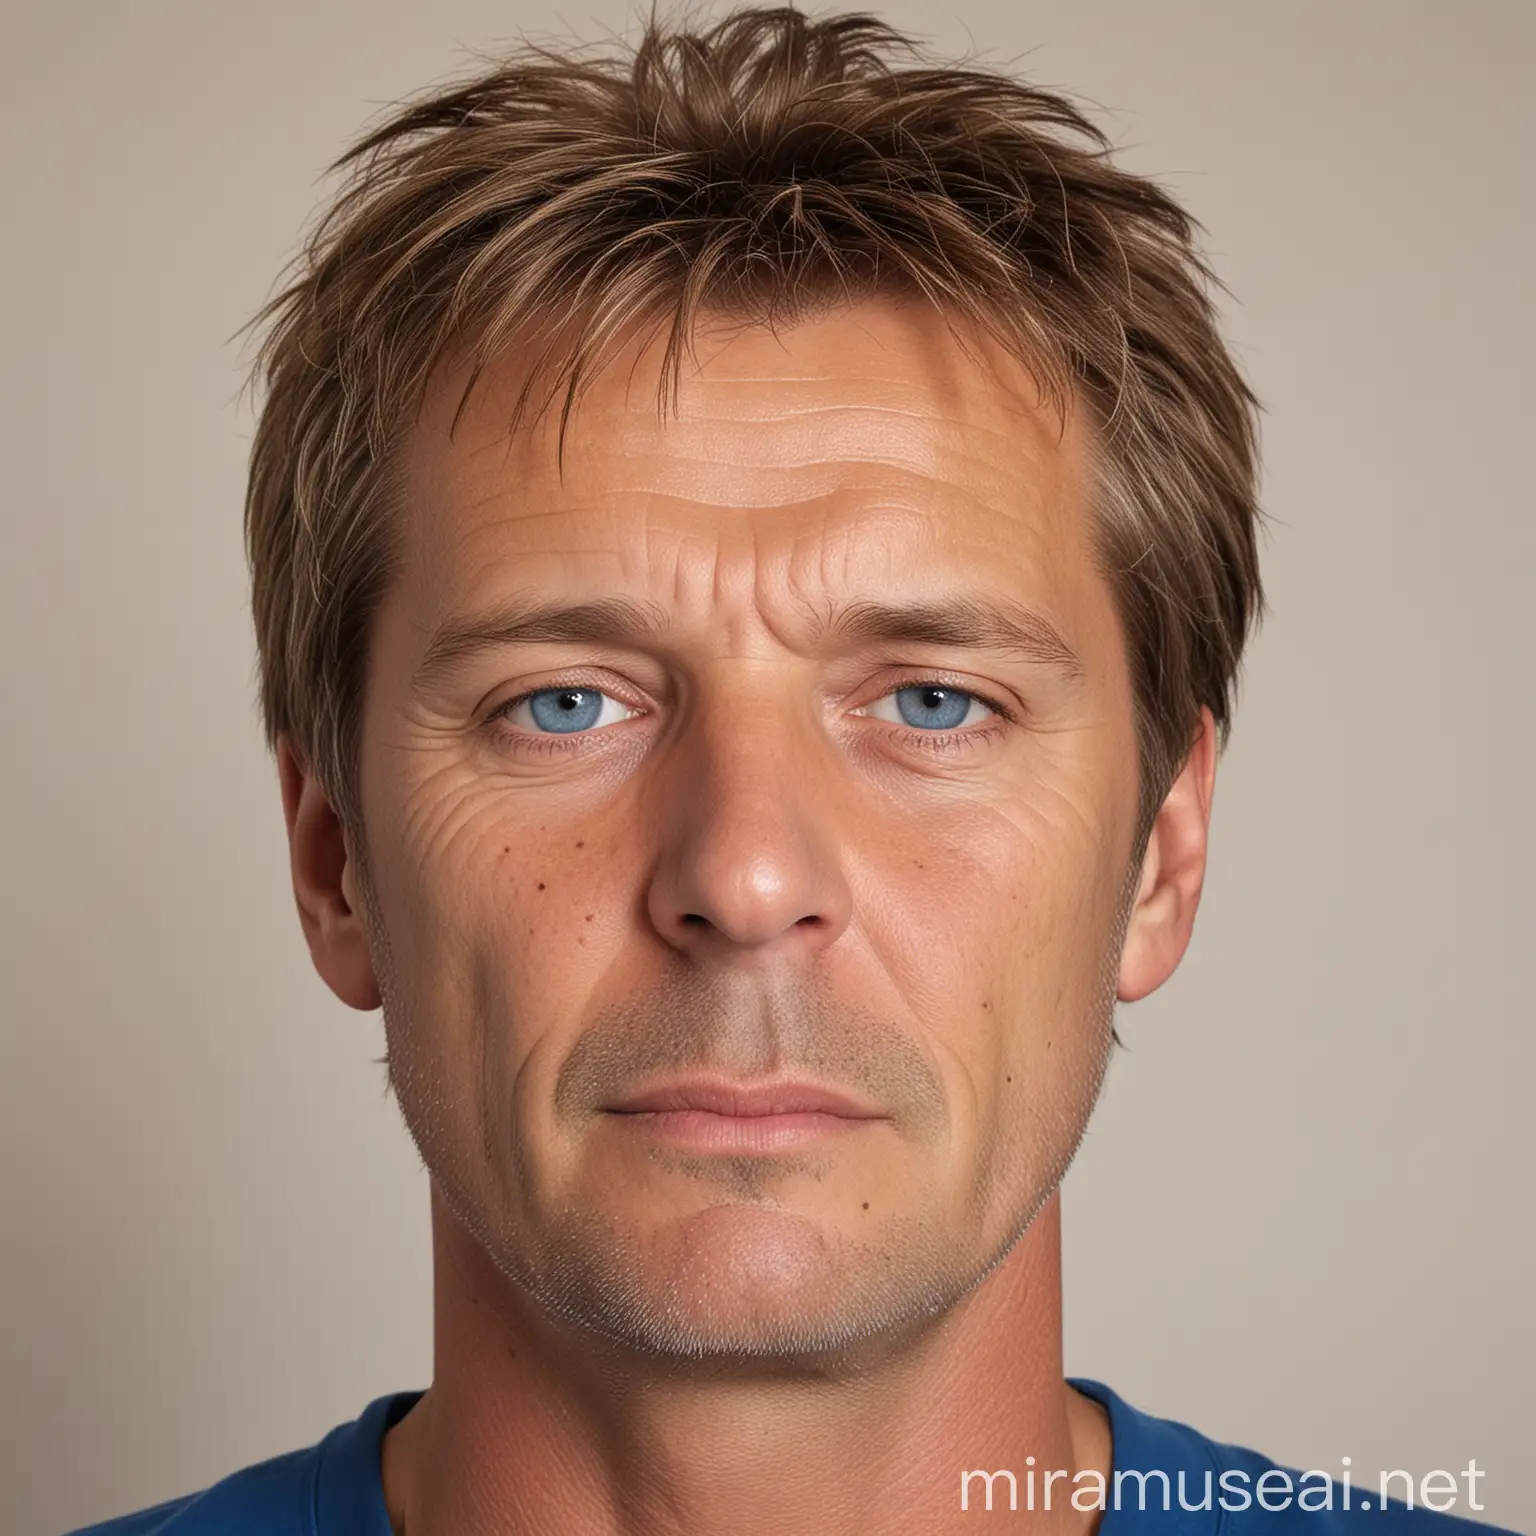 Niels Christian Laustsen
Mand på ca. 50 år.
meget kortere lysebrunt hår
nybarberet
Slank
Blå t-shirt
Større afstand mellem øjnene